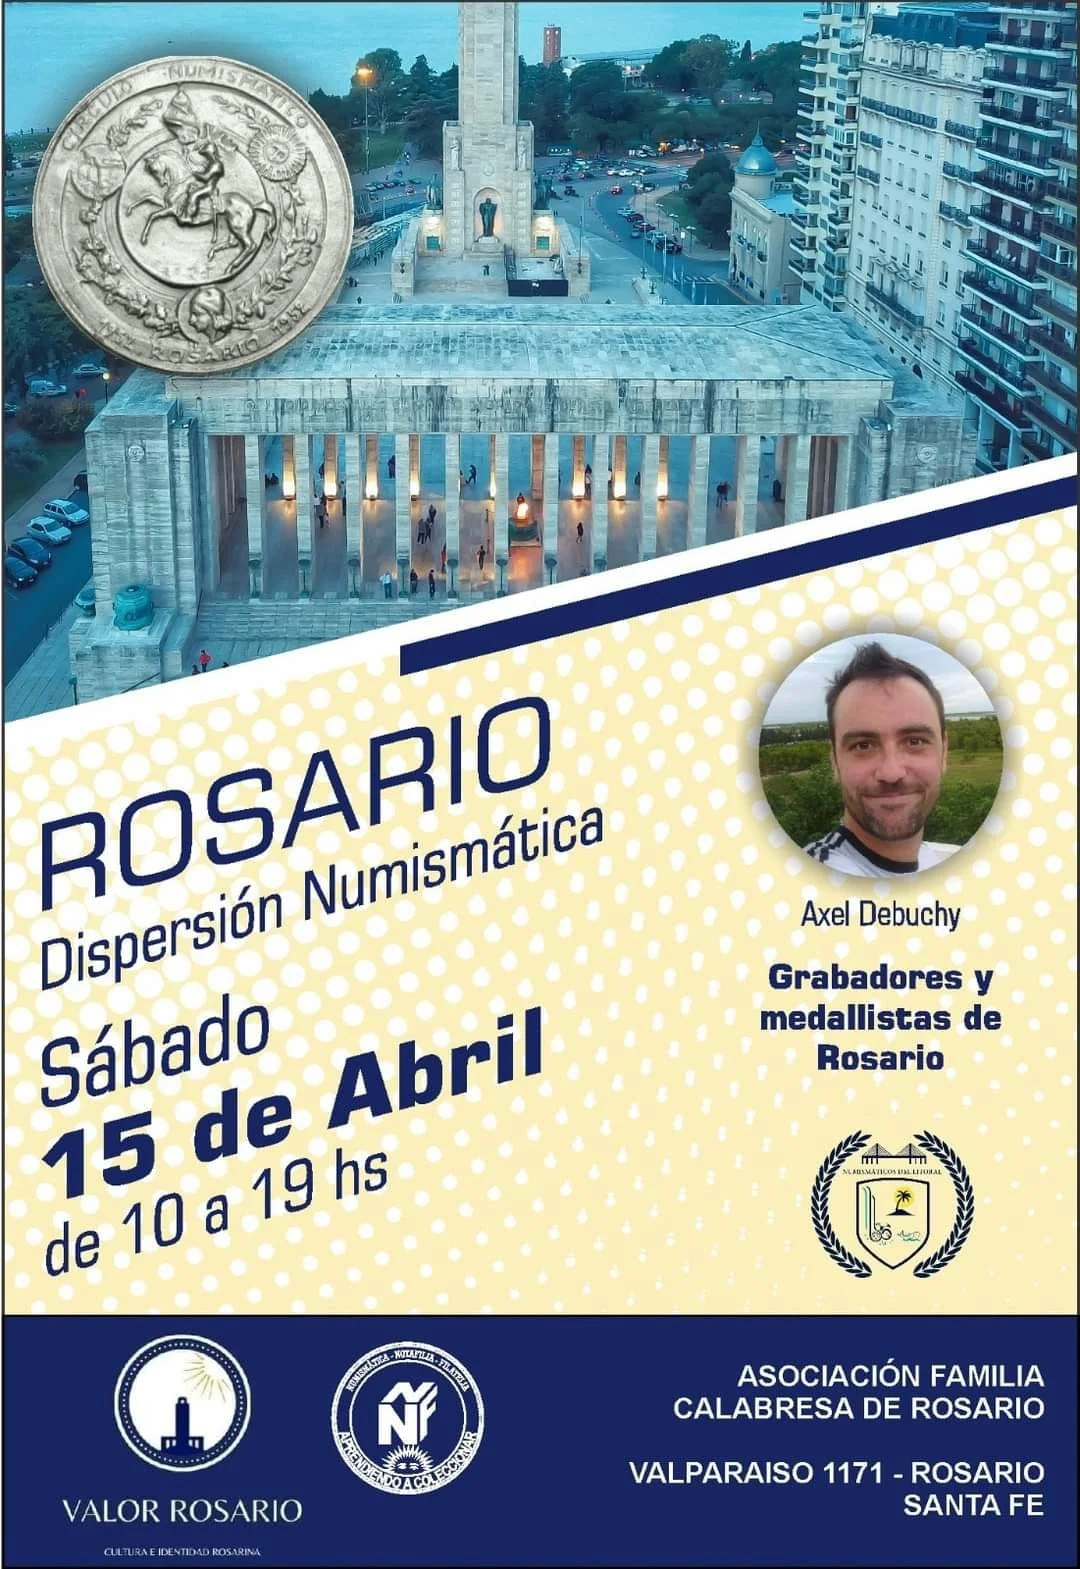 Rosario - Dispersión Numismática